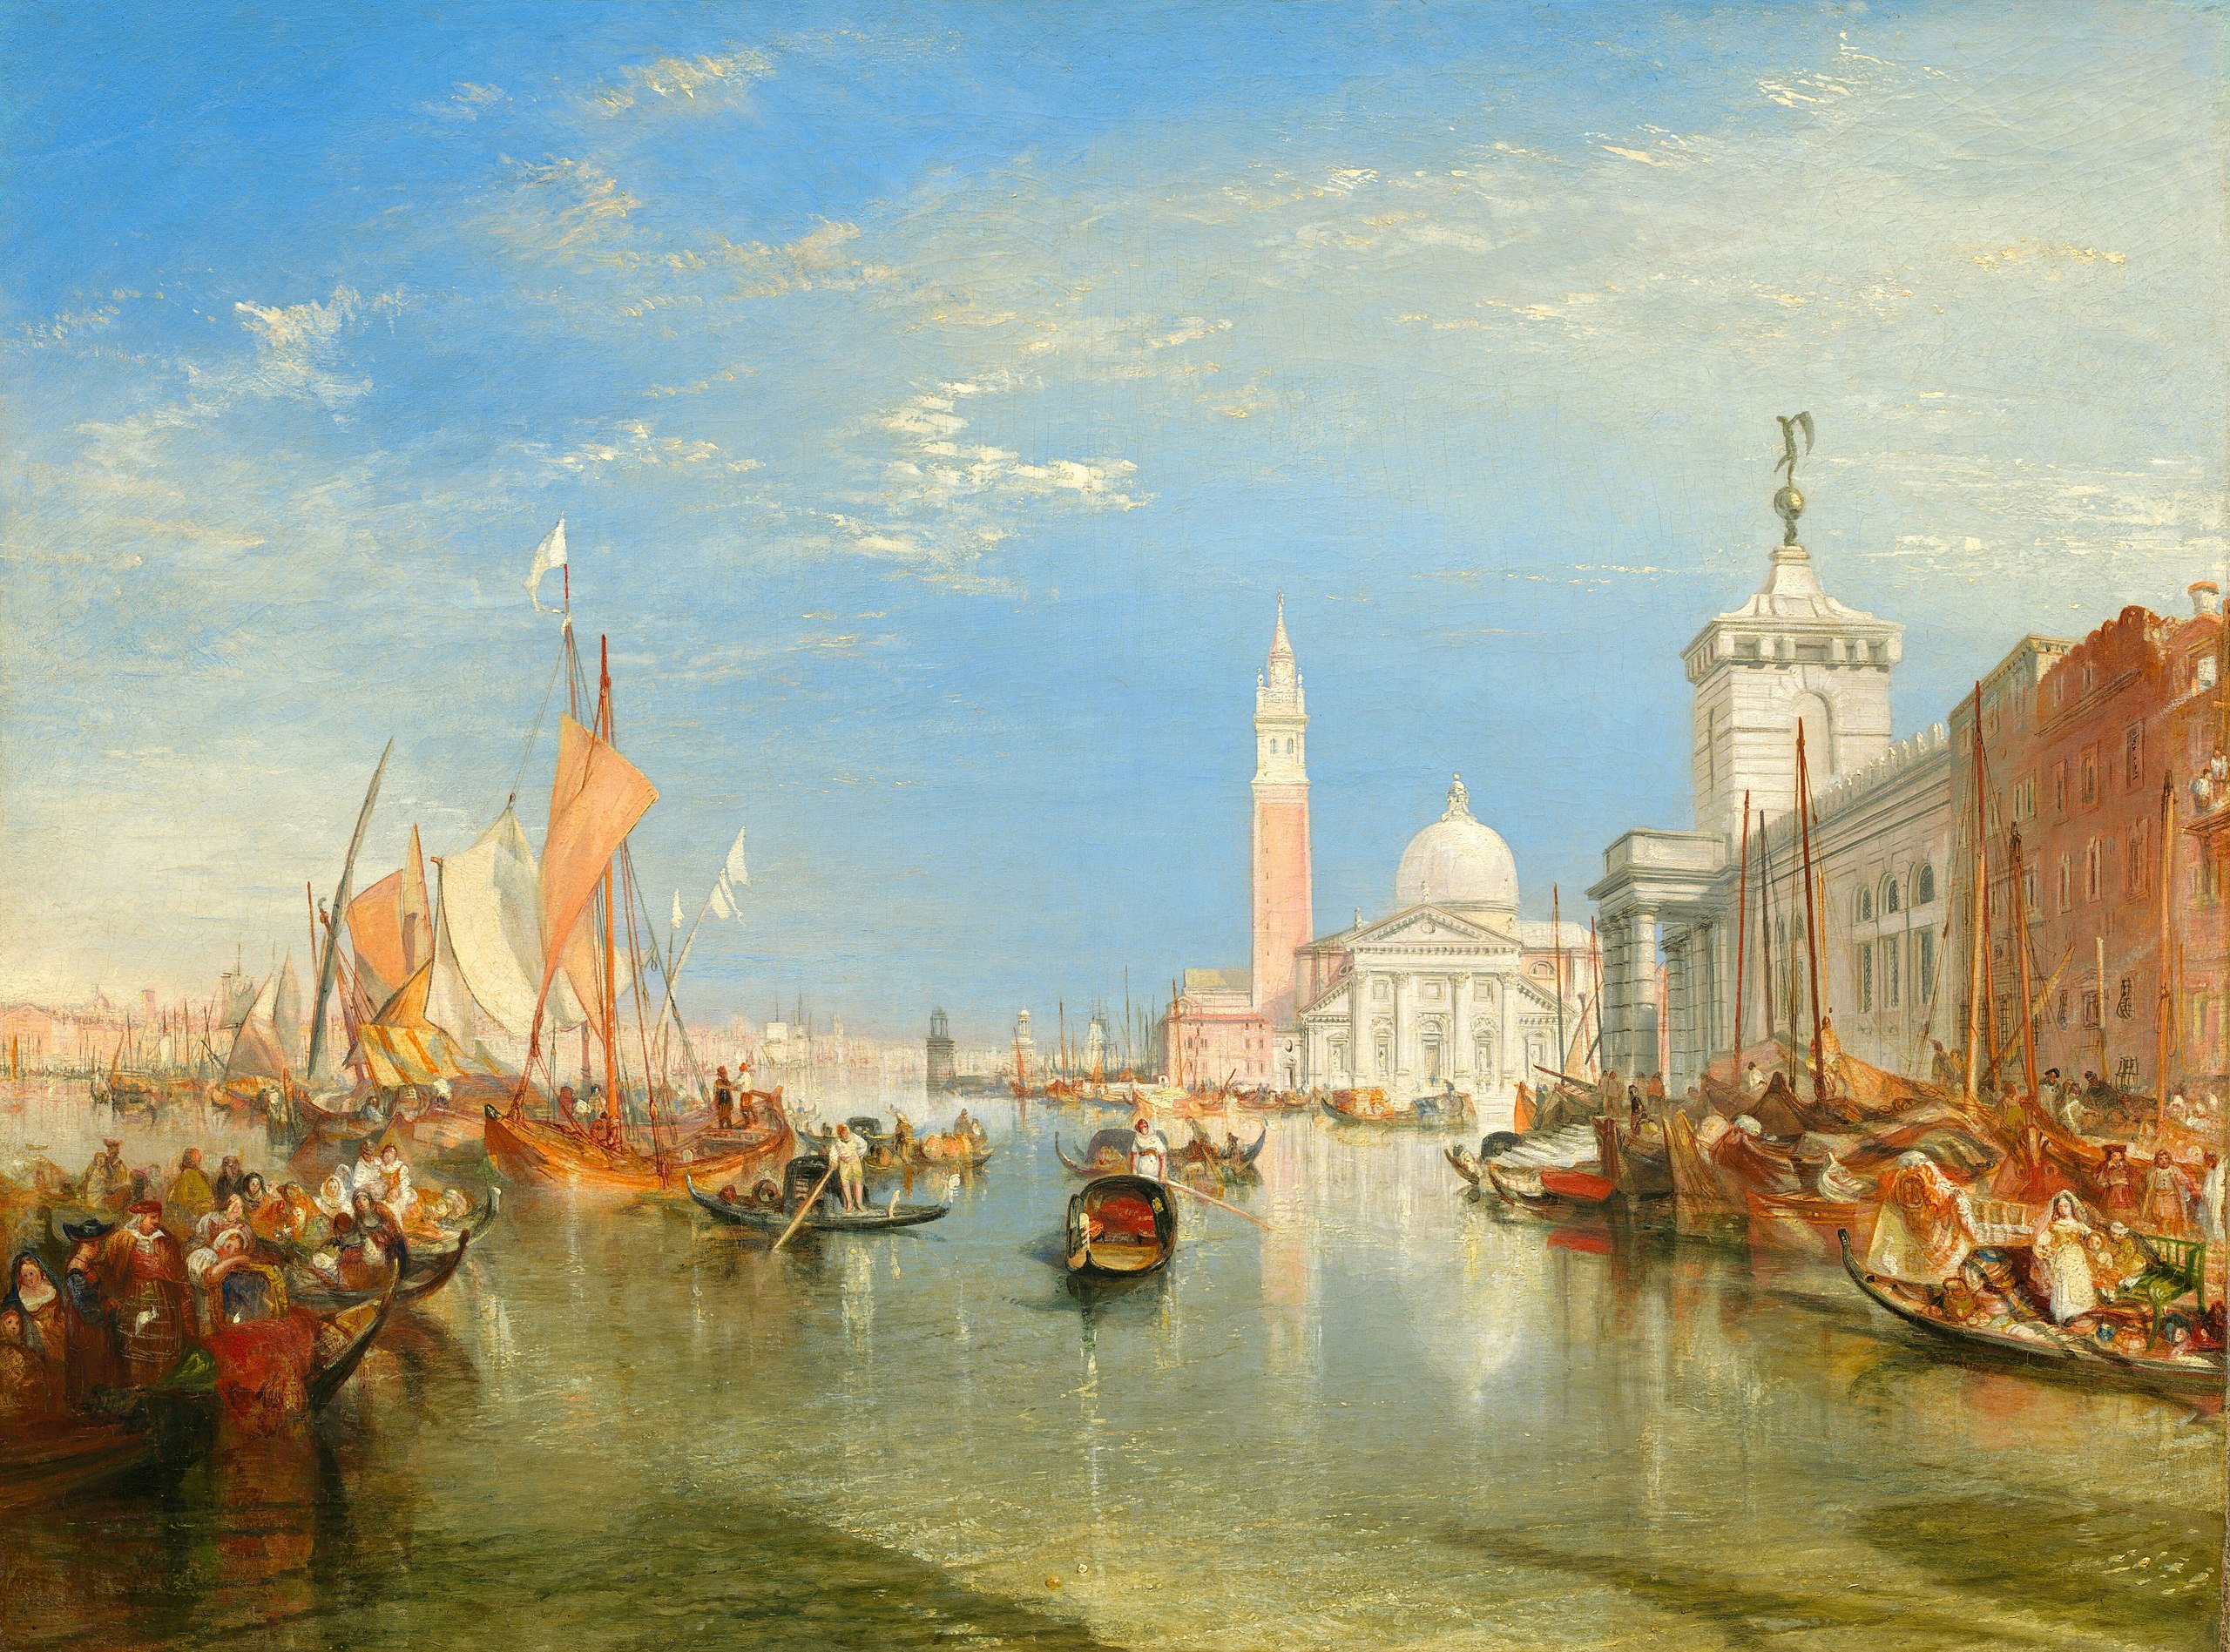 Венеција: Догана и Сан Ђорђо Мађоре by Joseph Mallord William Turner - 1834. - 91,5 x 122 cm 